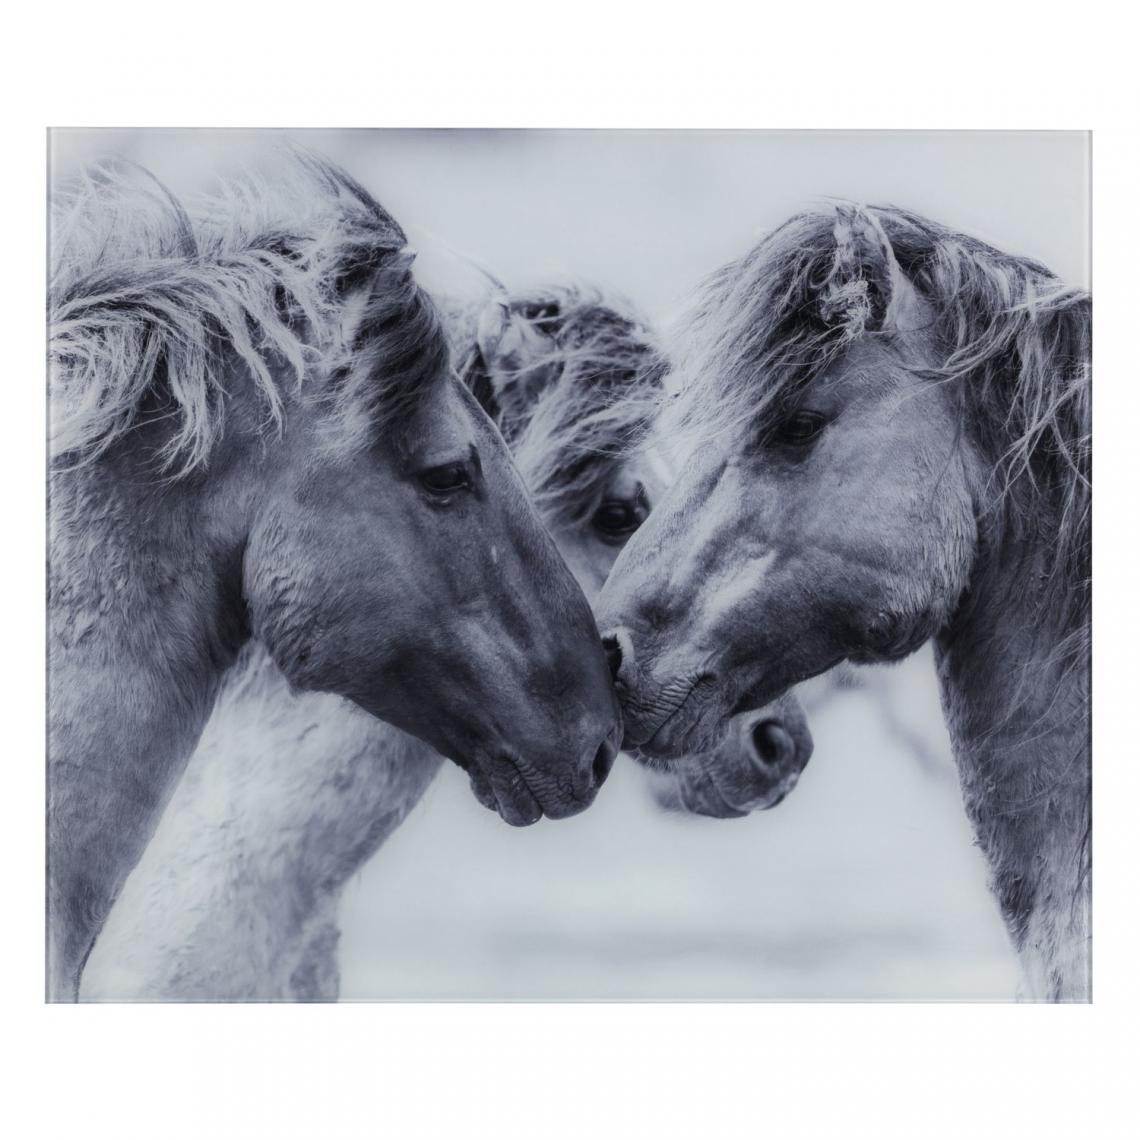 Wenko - Fond de hotte en verre trempé chevaux sauvages - Longueur 60 cm x Largeur 50 cm - Fond de hotte